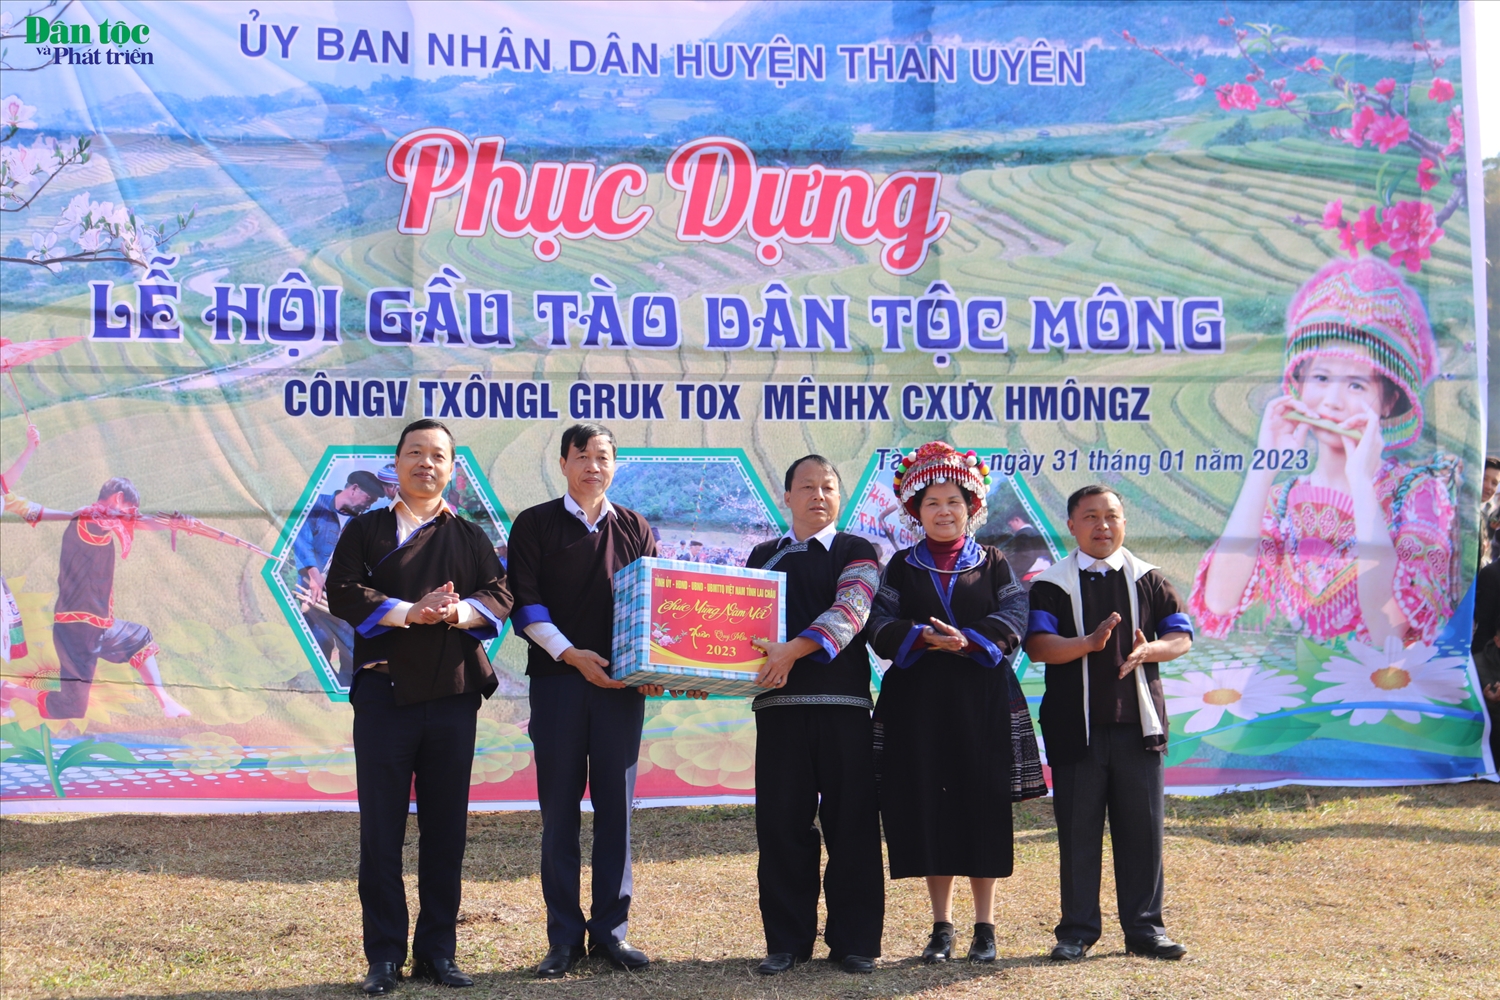 Bí thư Tỉnh ủy Lai Châu và Chủ tịch tỉnh Lai Châu tặng quà chúc tết UBND huyện Than Uyên và xã Tà Mung.